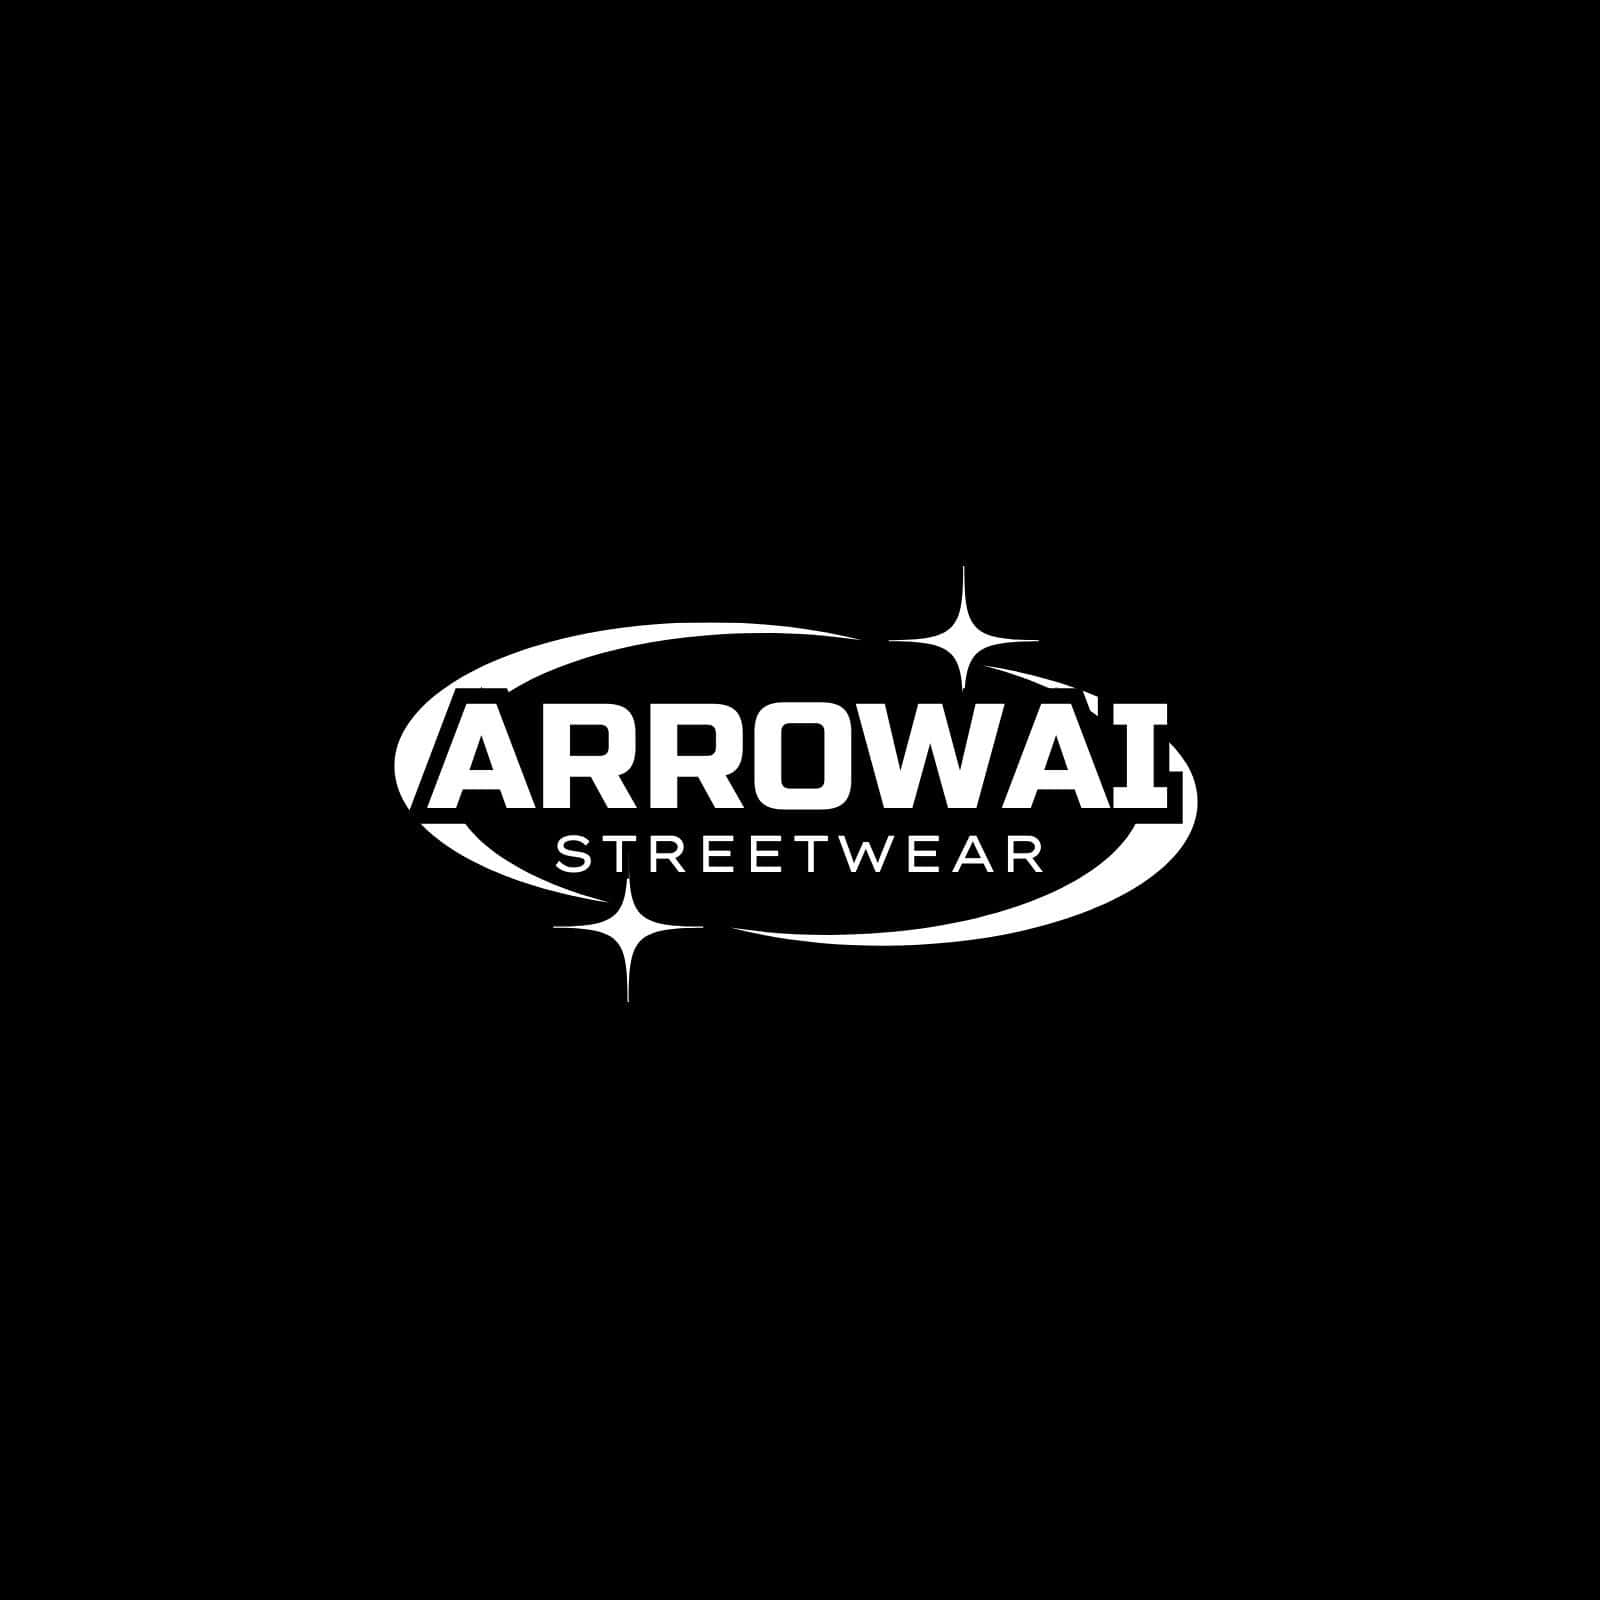 Arrowai Streetwear Logo Black Background Wallpaper